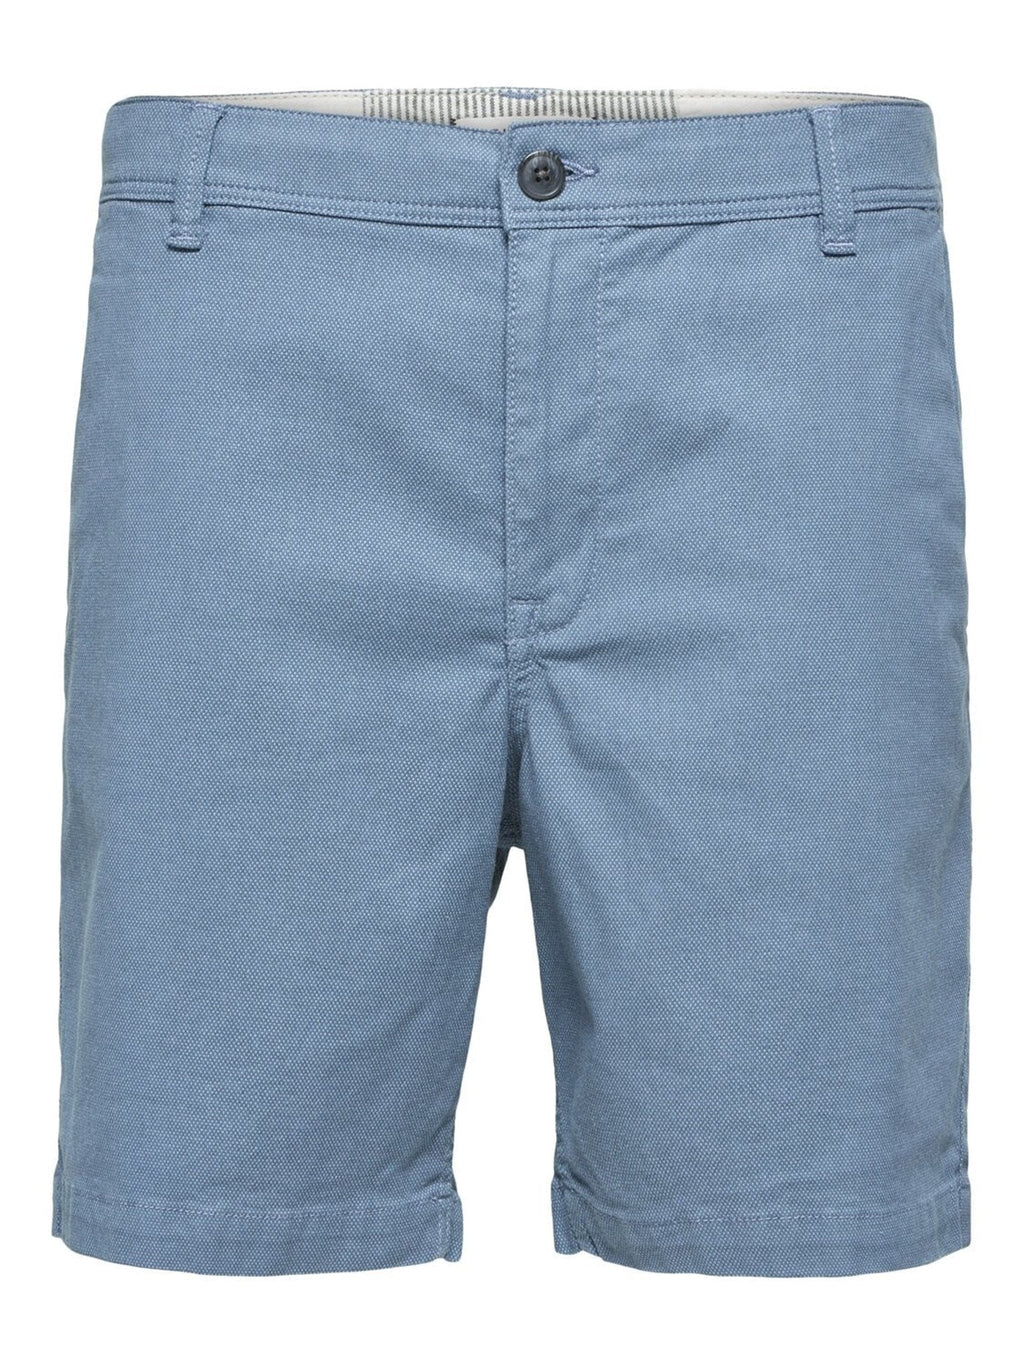 Storm Flex shorts - lichtblauw